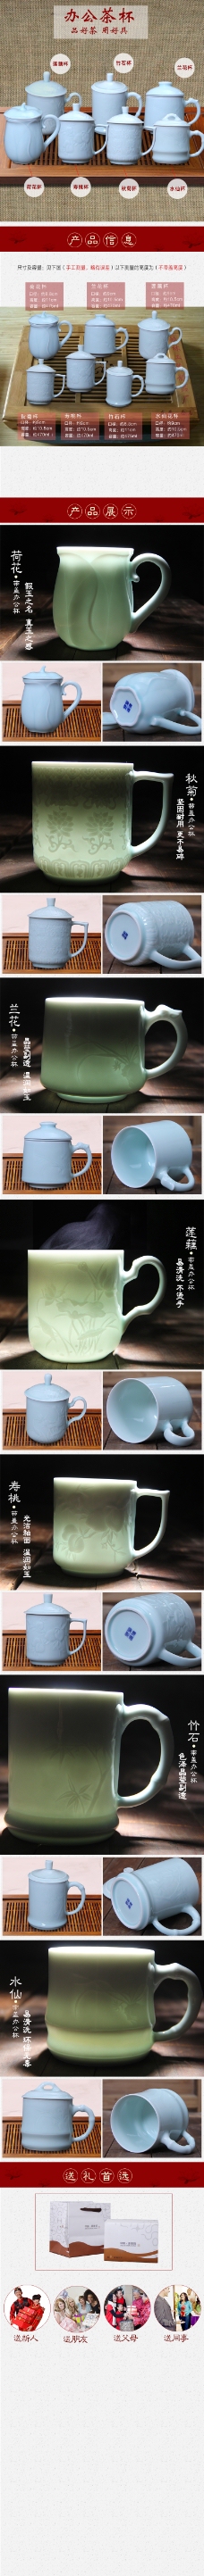 陶瓷茶杯详情页